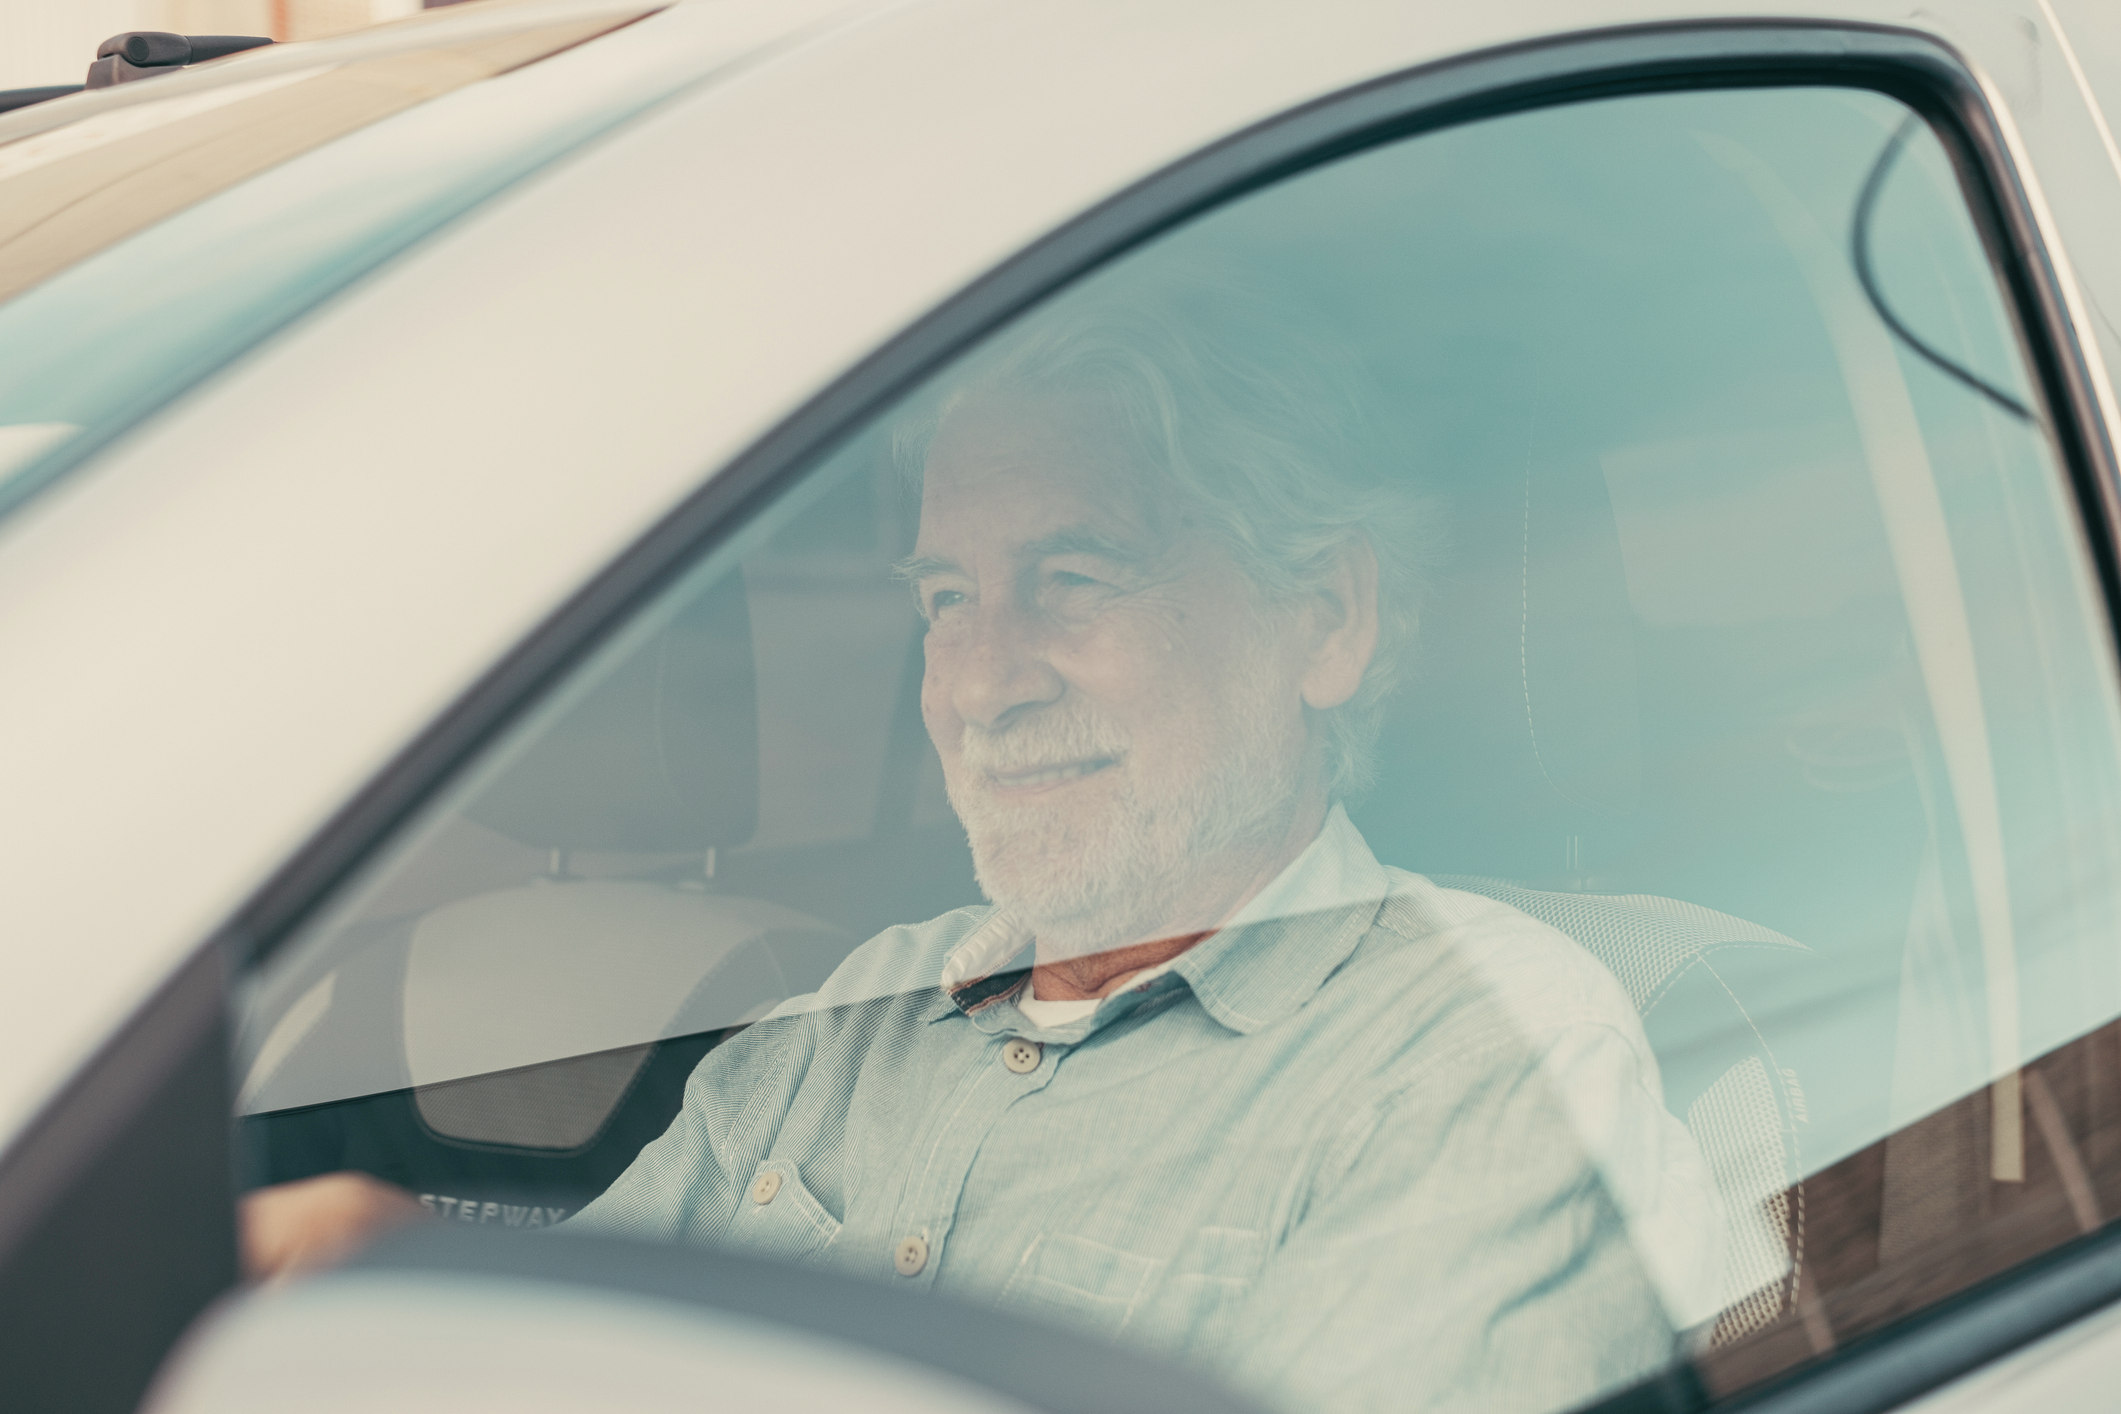 Ubezpieczenie samochodu dla seniora - starszy mężczyzna prowadzący samochód